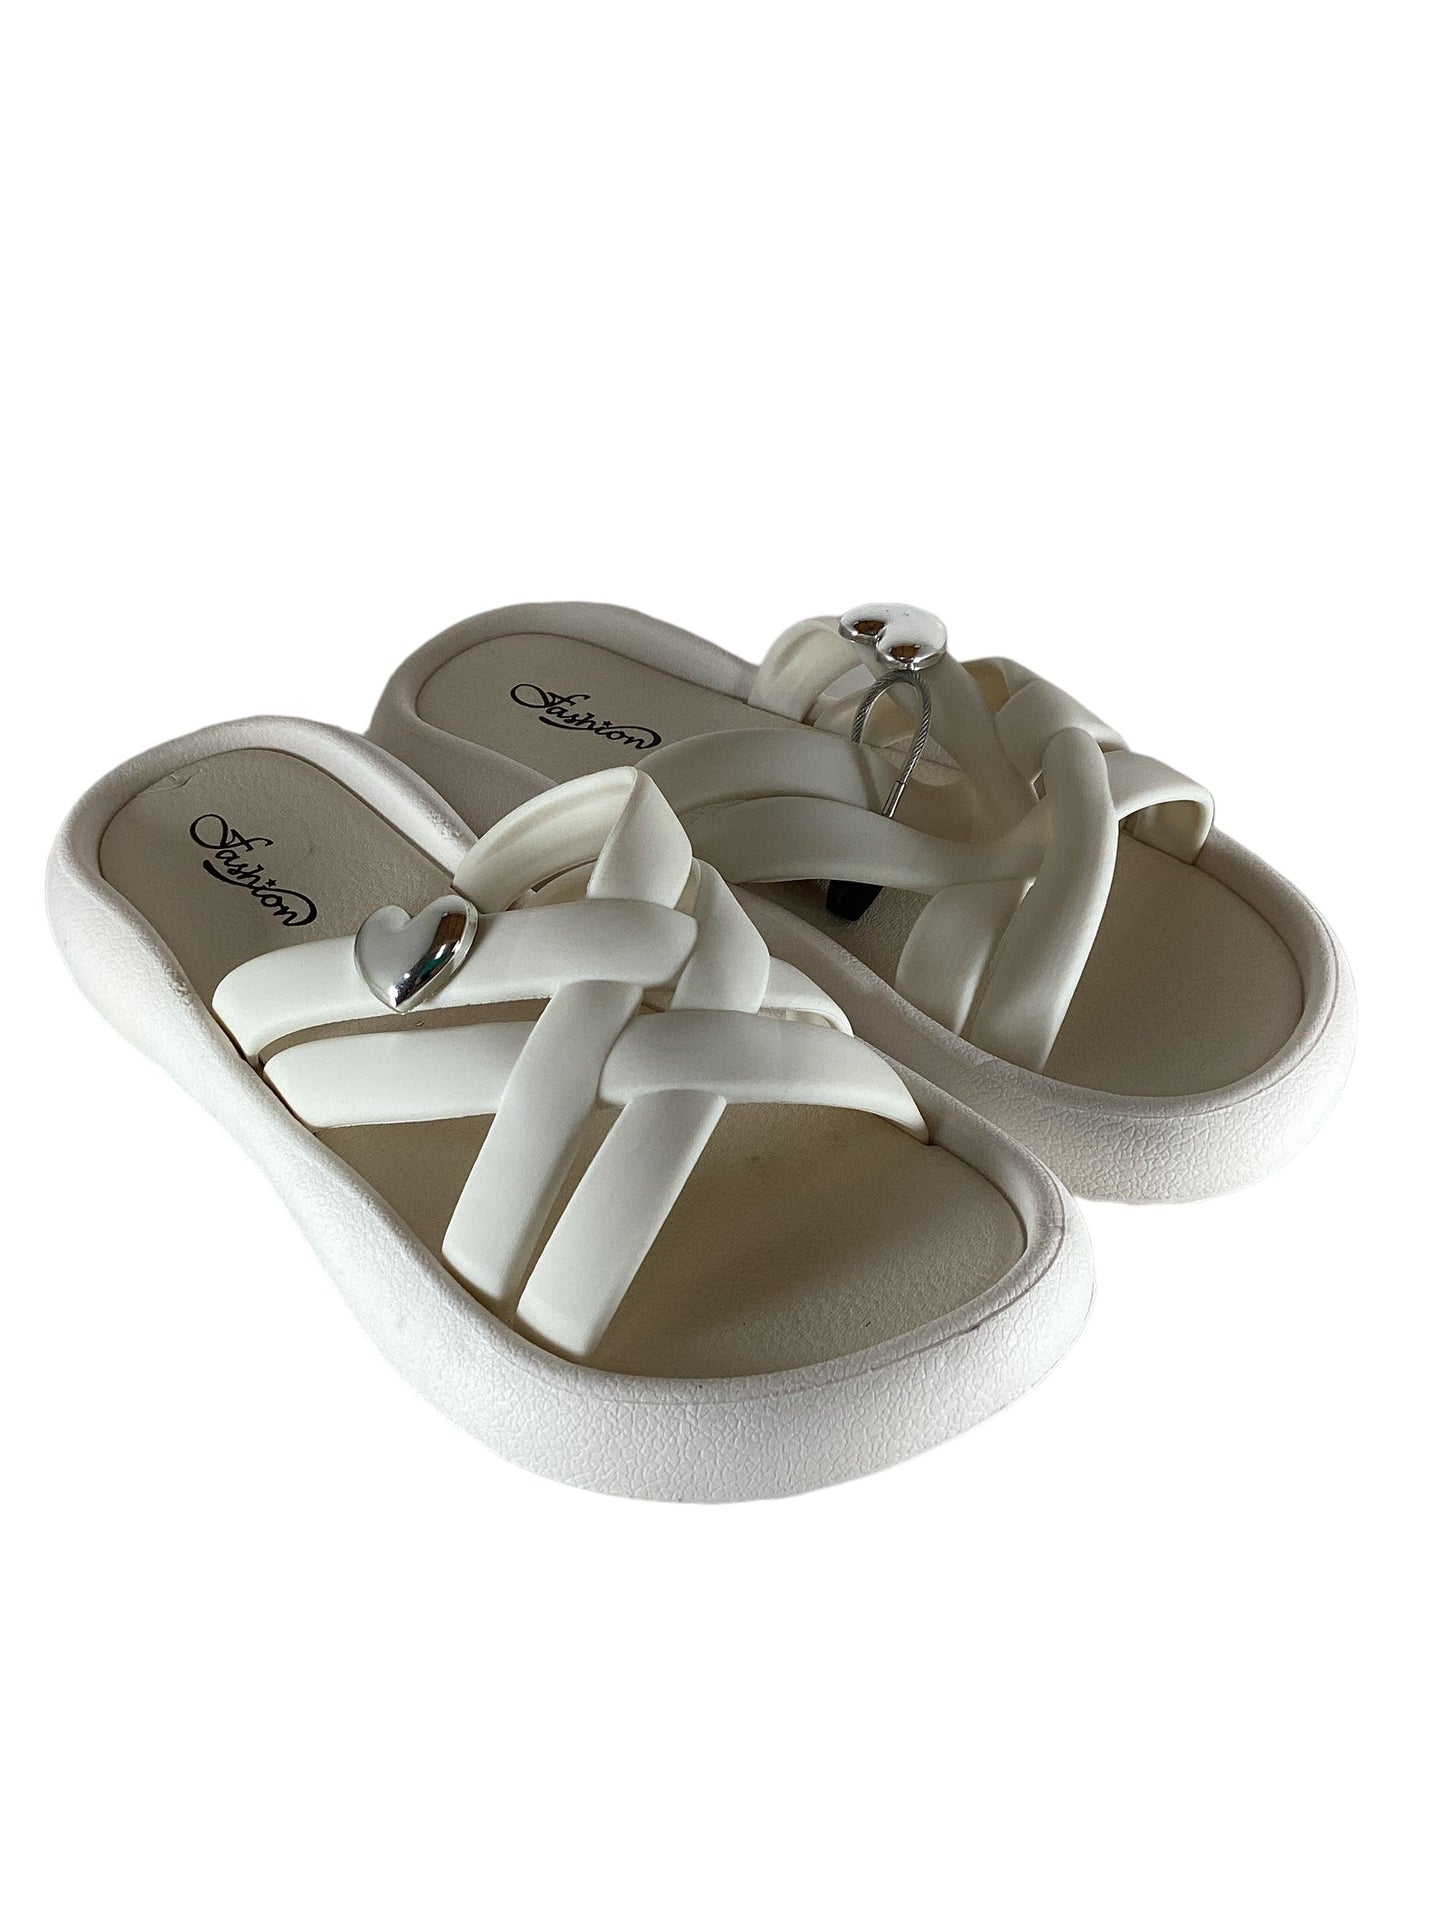 White Sandals Flip Flops Clothes Mentor, Size 10